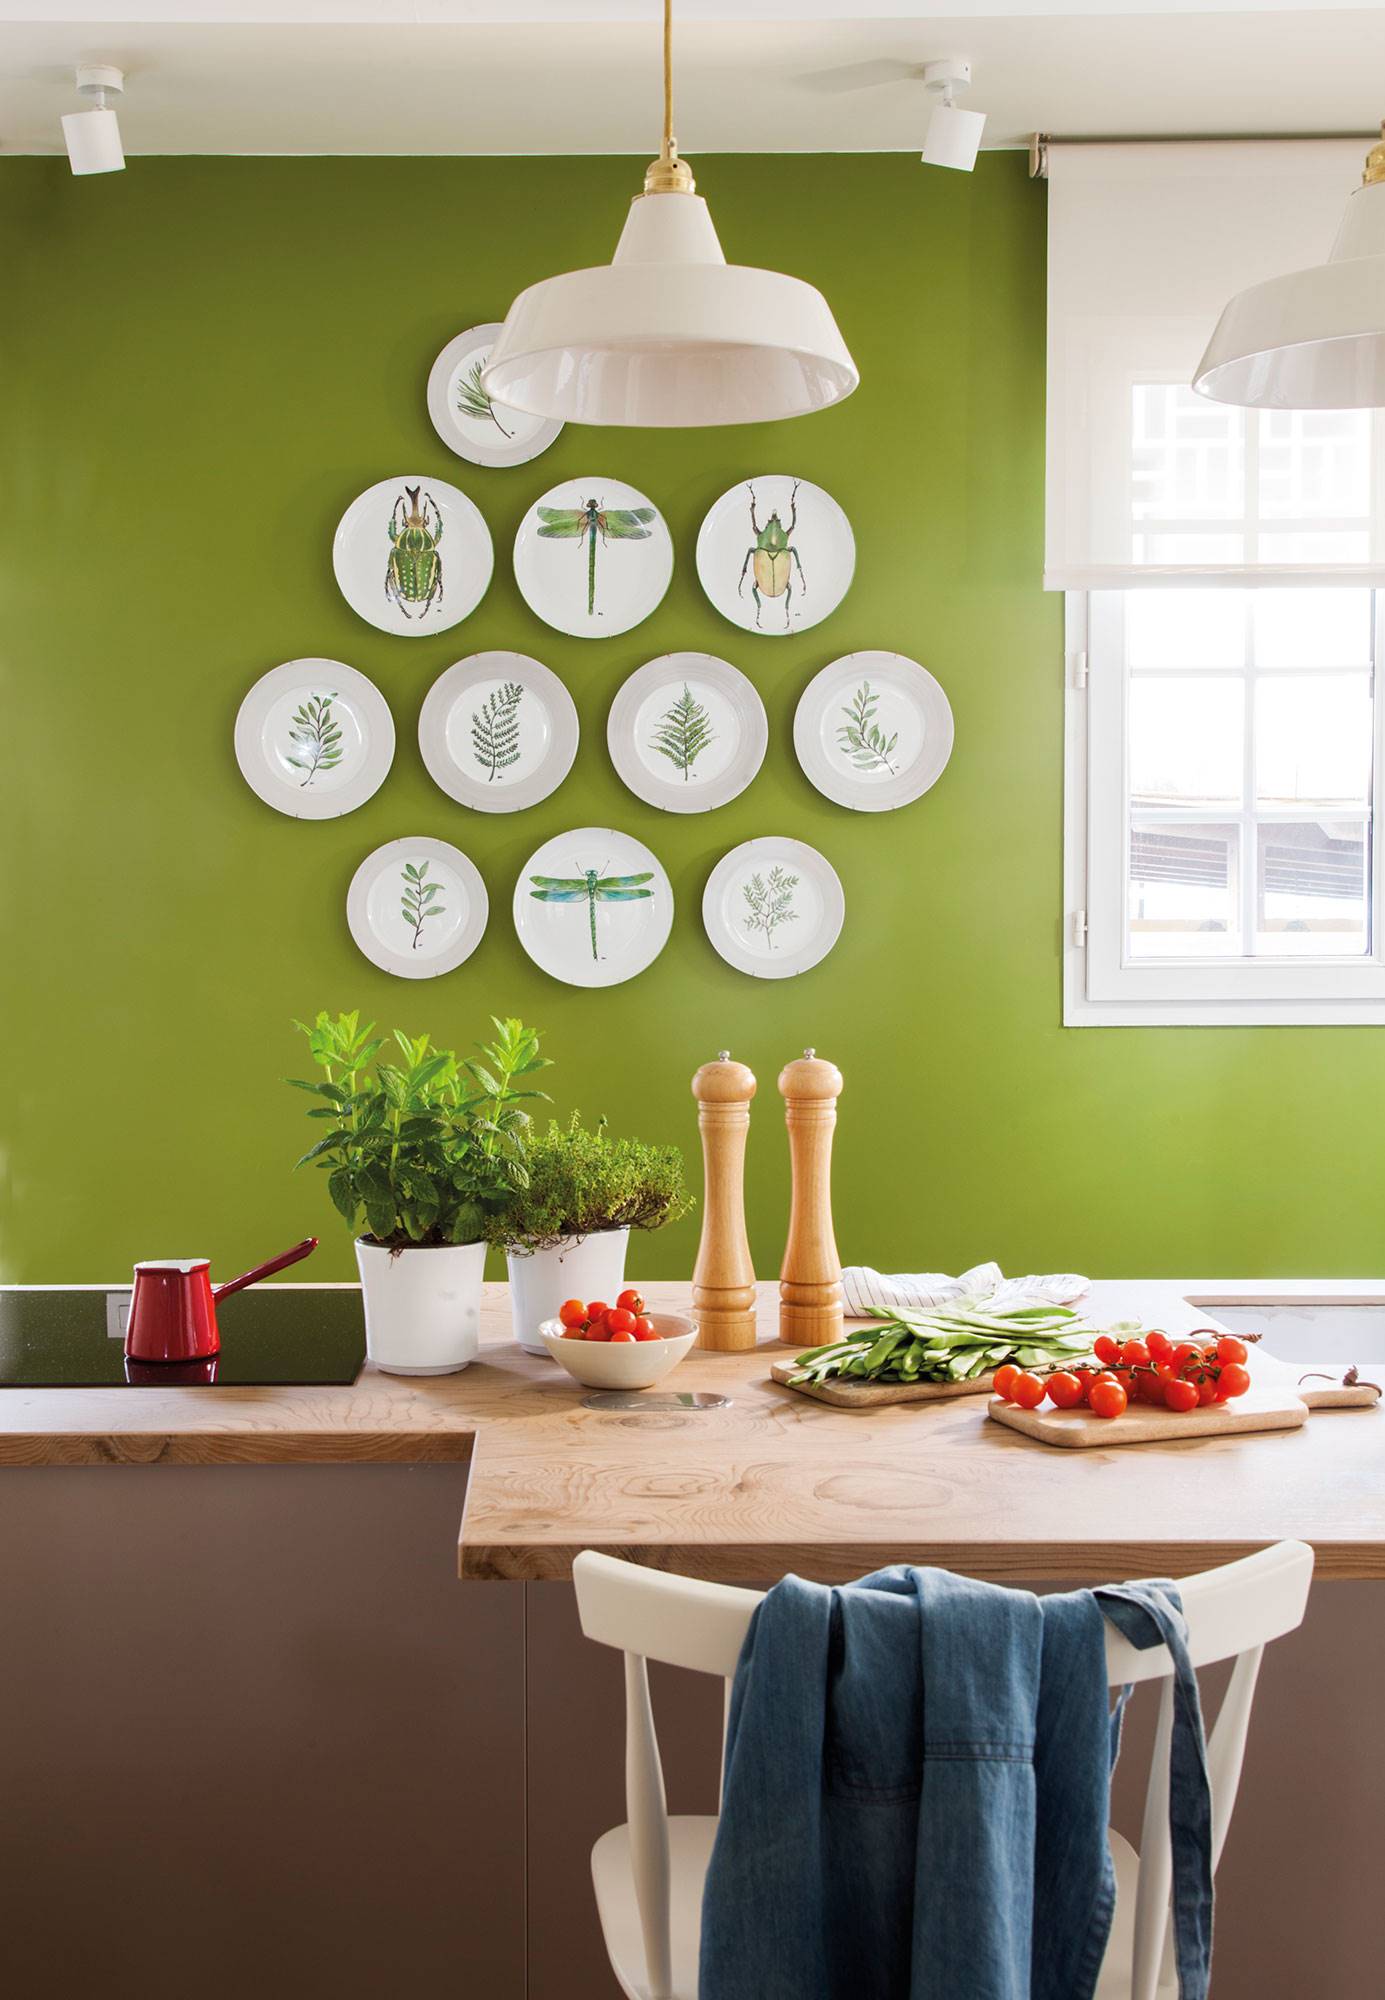 pared cocina en verde decorada con platos